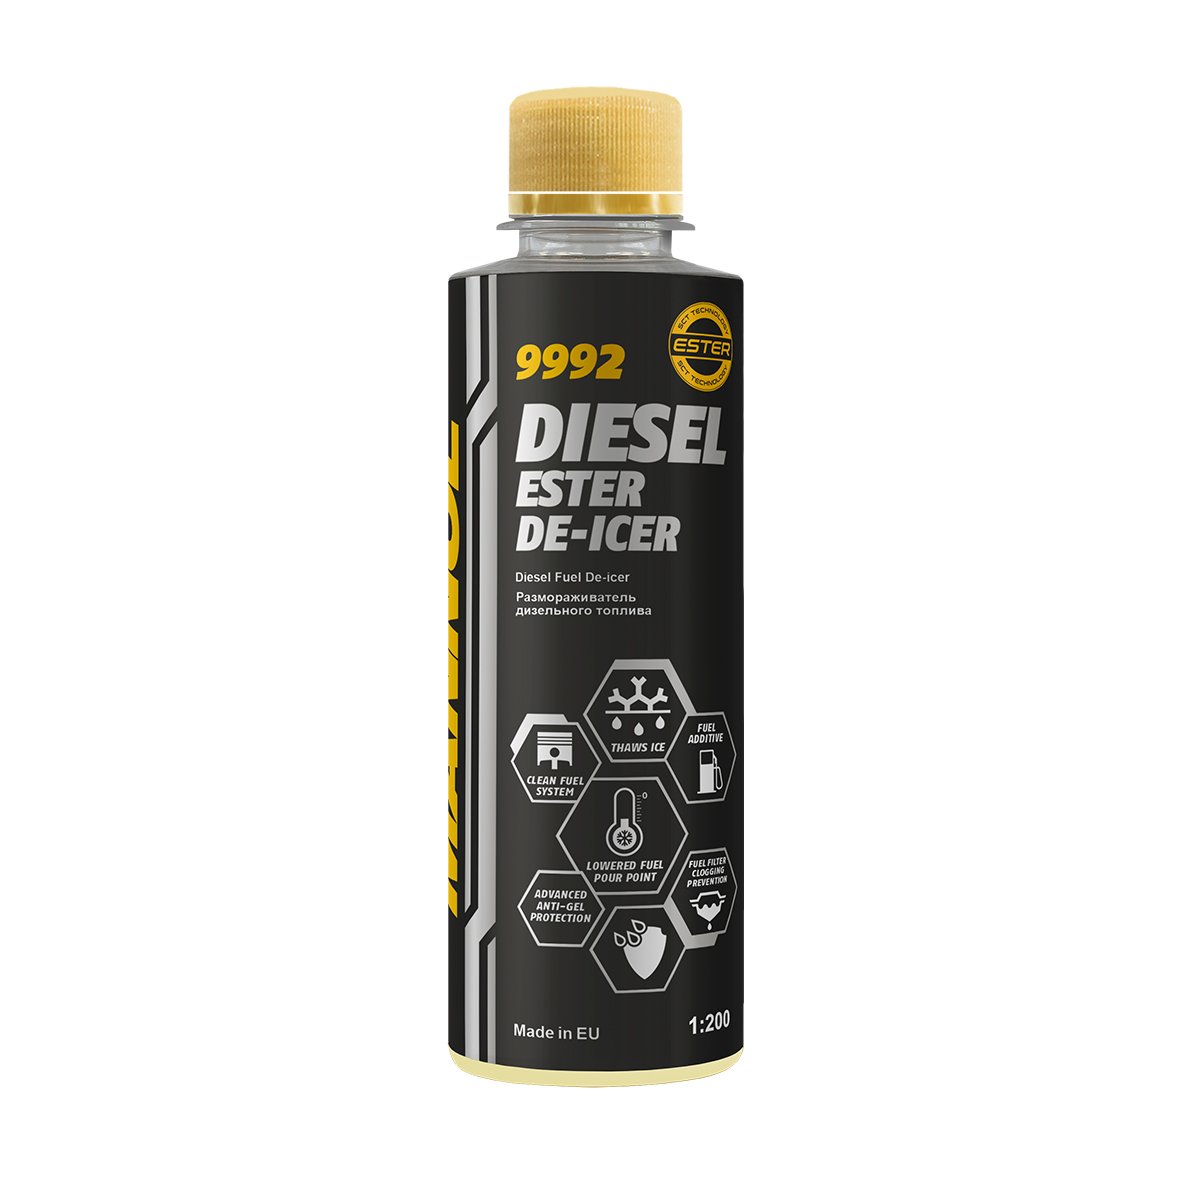 Размораживатель дизельного топлива MANNOL Diesel Ester De-Icer 9992 250мл